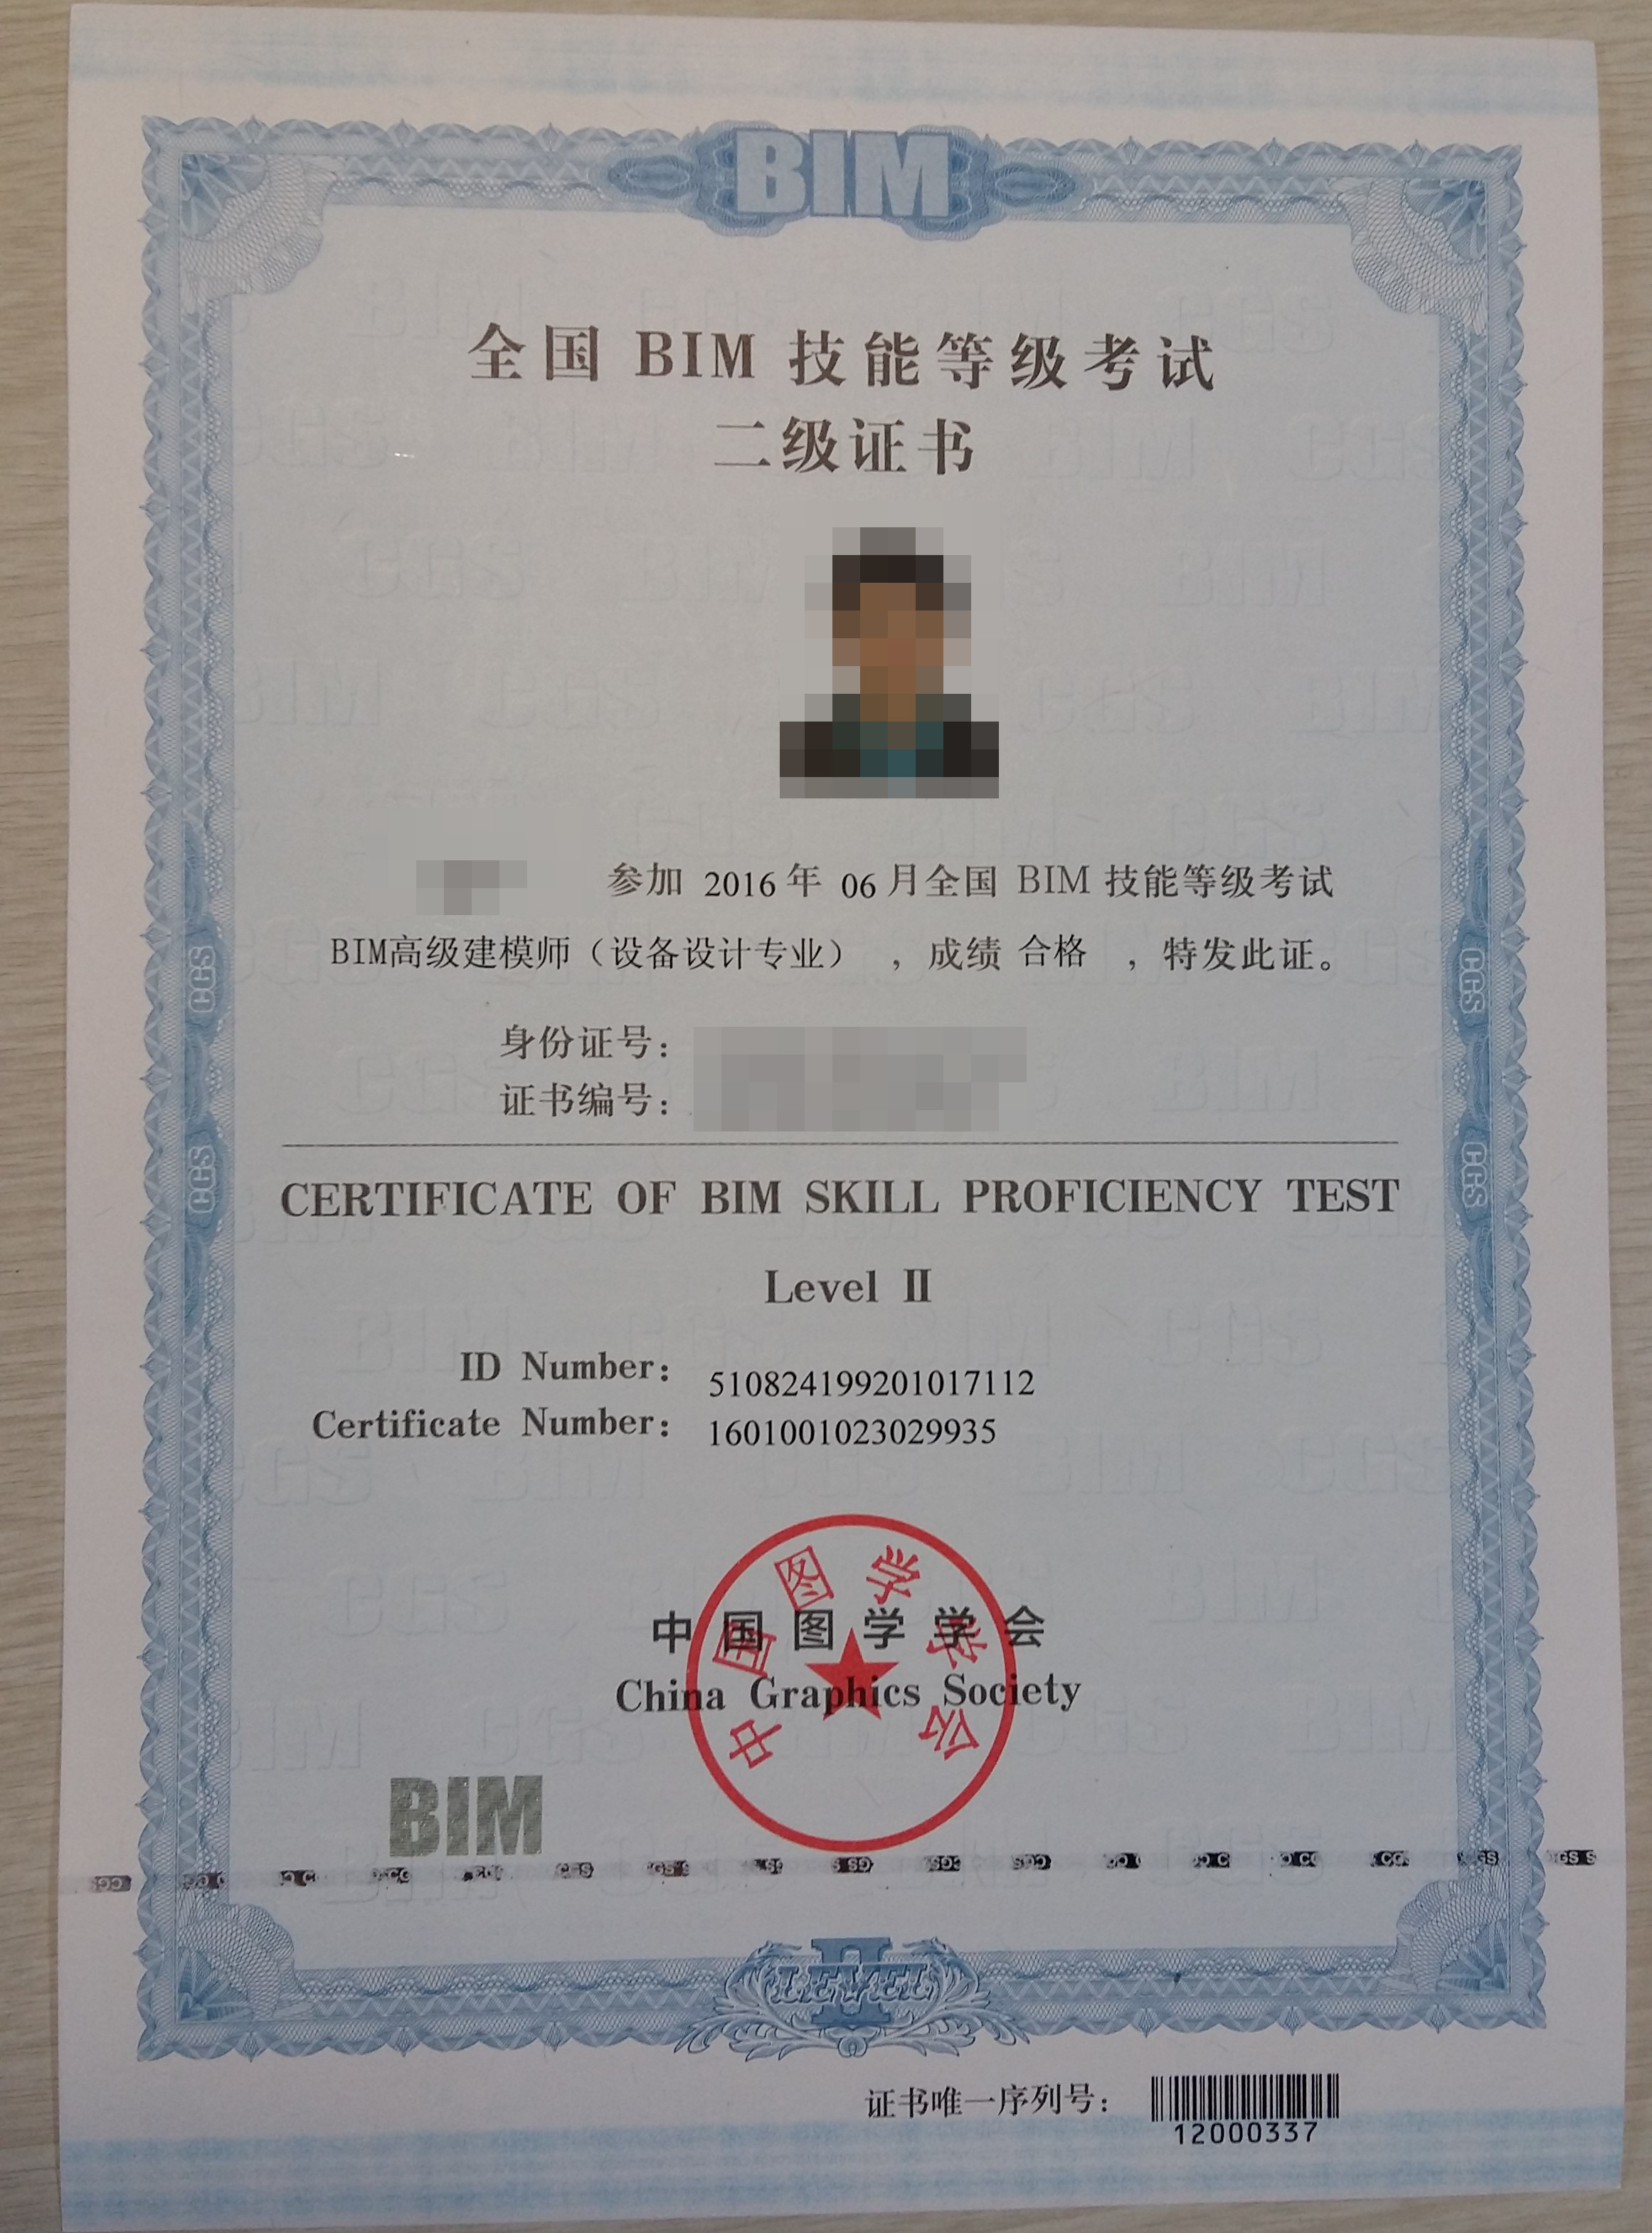 中国图学学会 颁发 《全国bim技能等级考试证书》